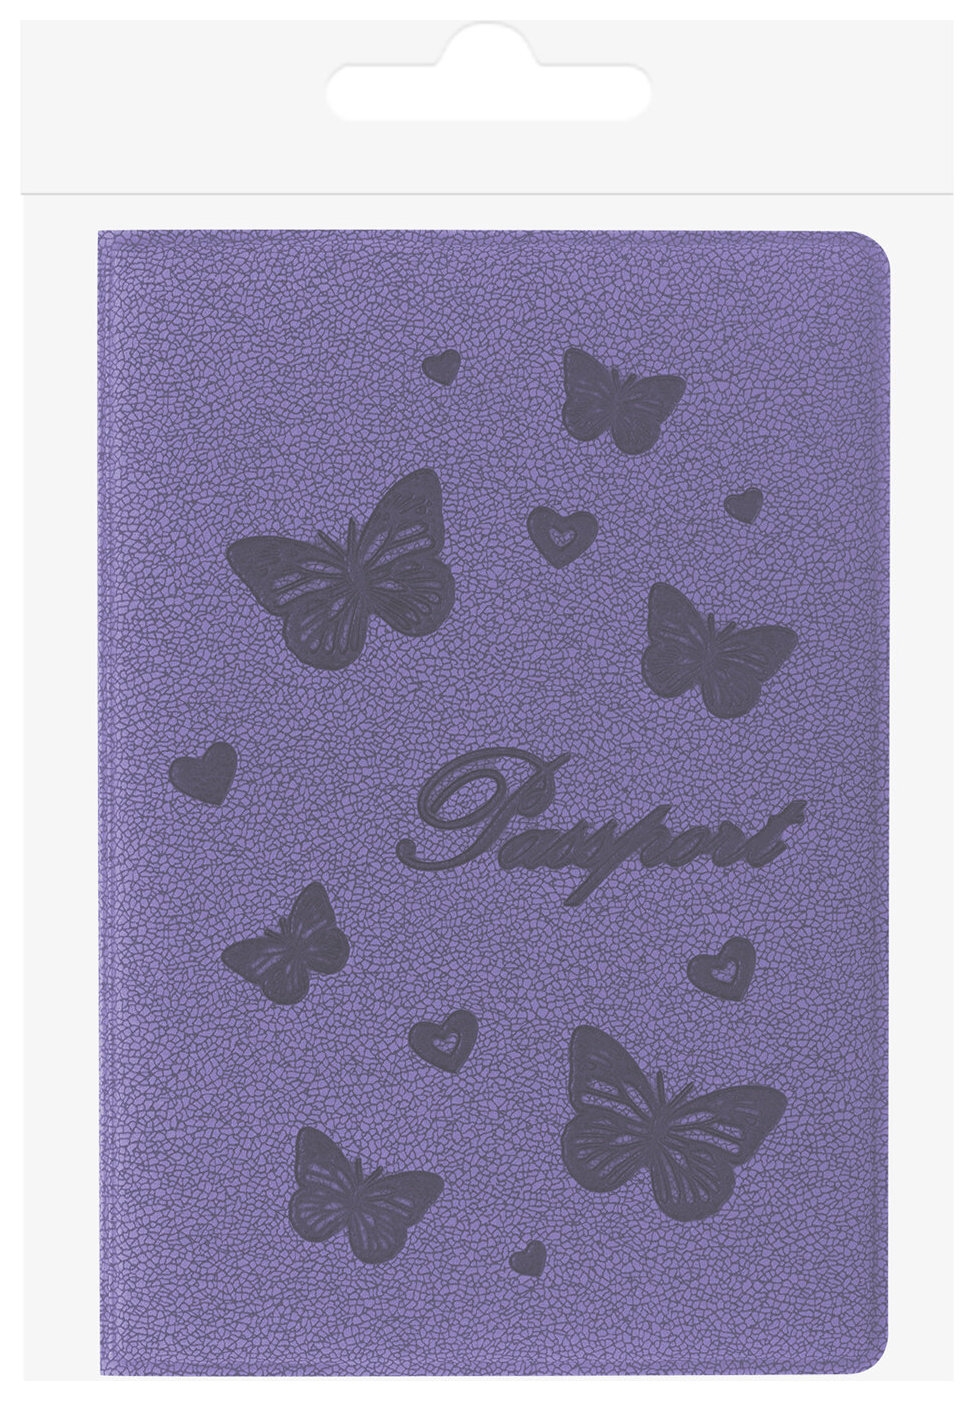 Обложка для паспорта Staff, бархатный полиуретан, Бабочки, фиолетовая, 237618